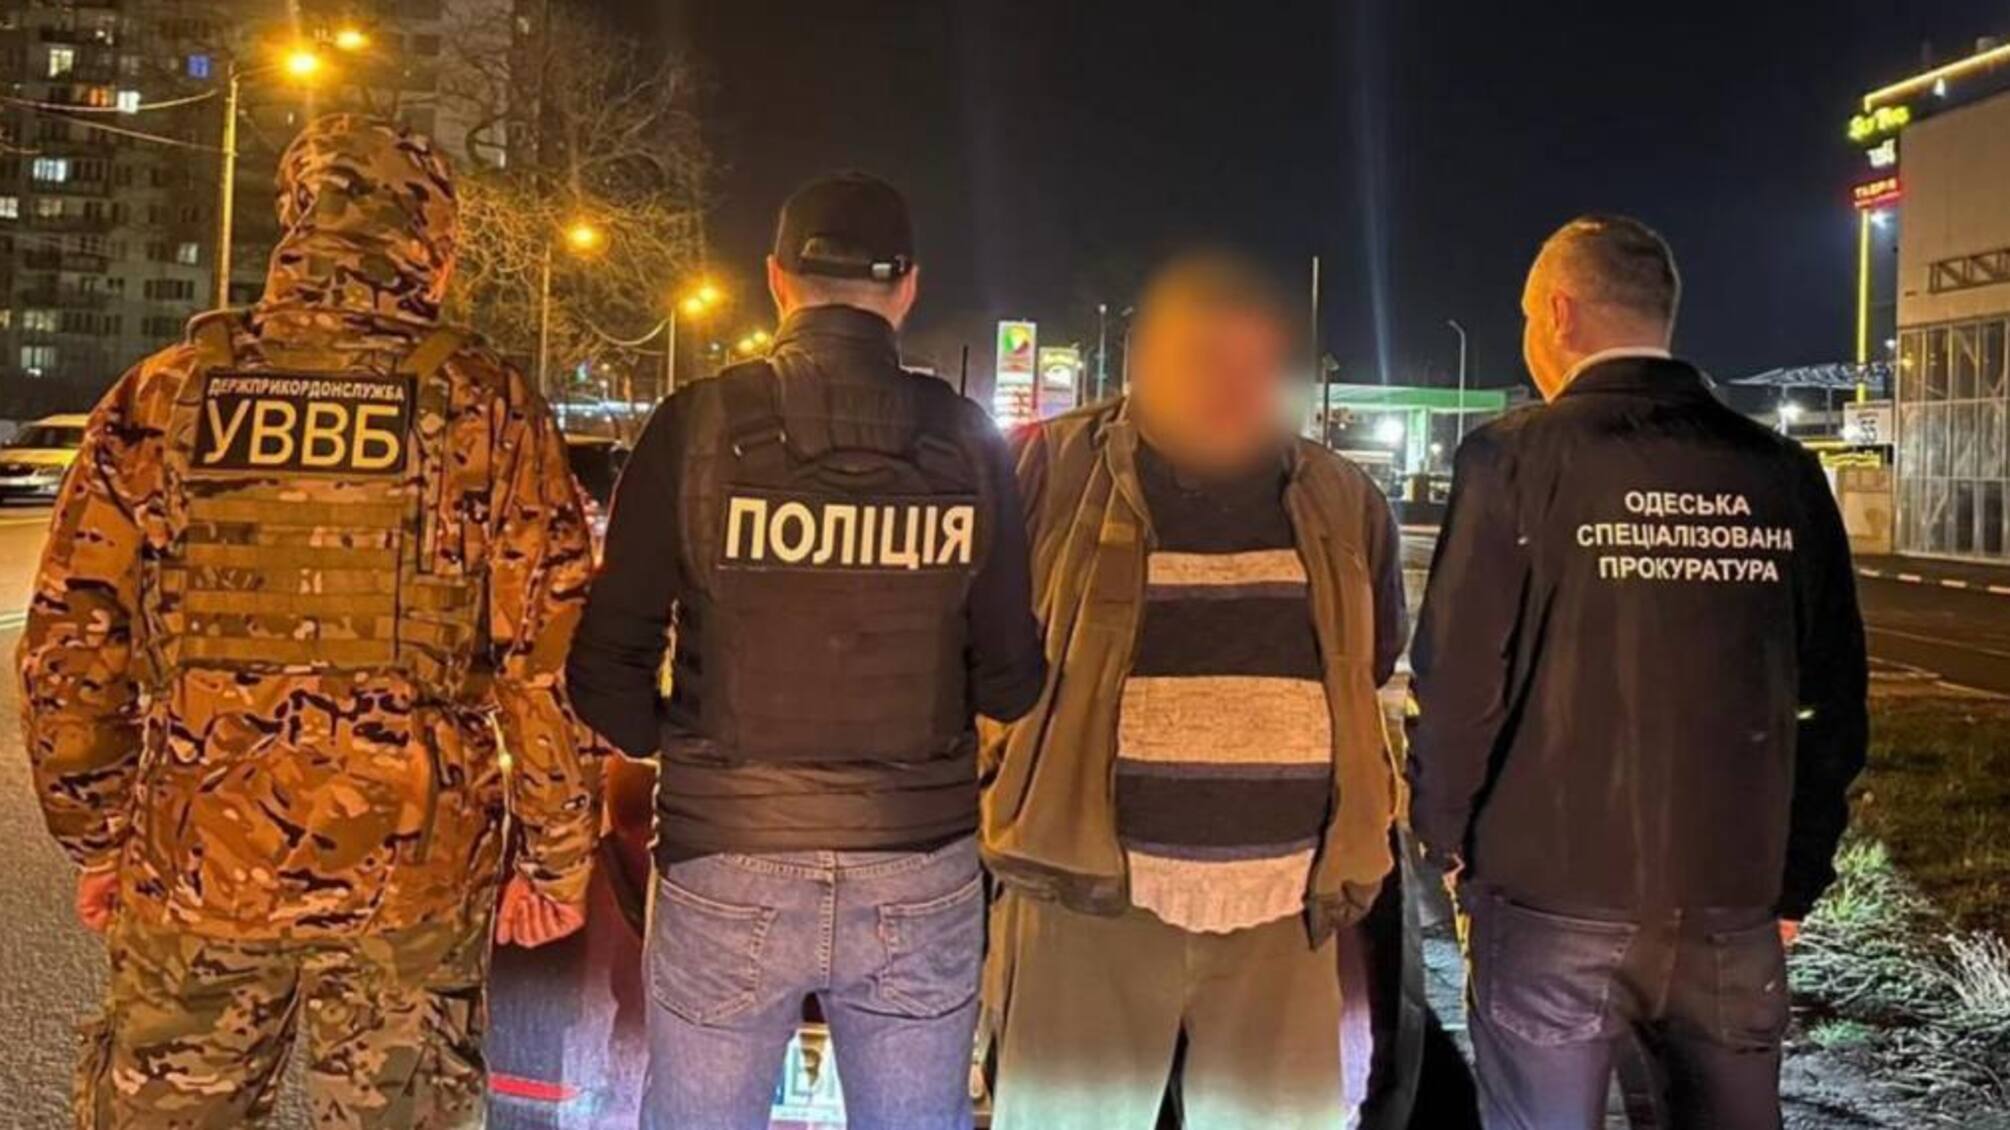 4,5 тис. доларів за 'звільнення від служби': на Одещині затримали торговця фальшивими документами